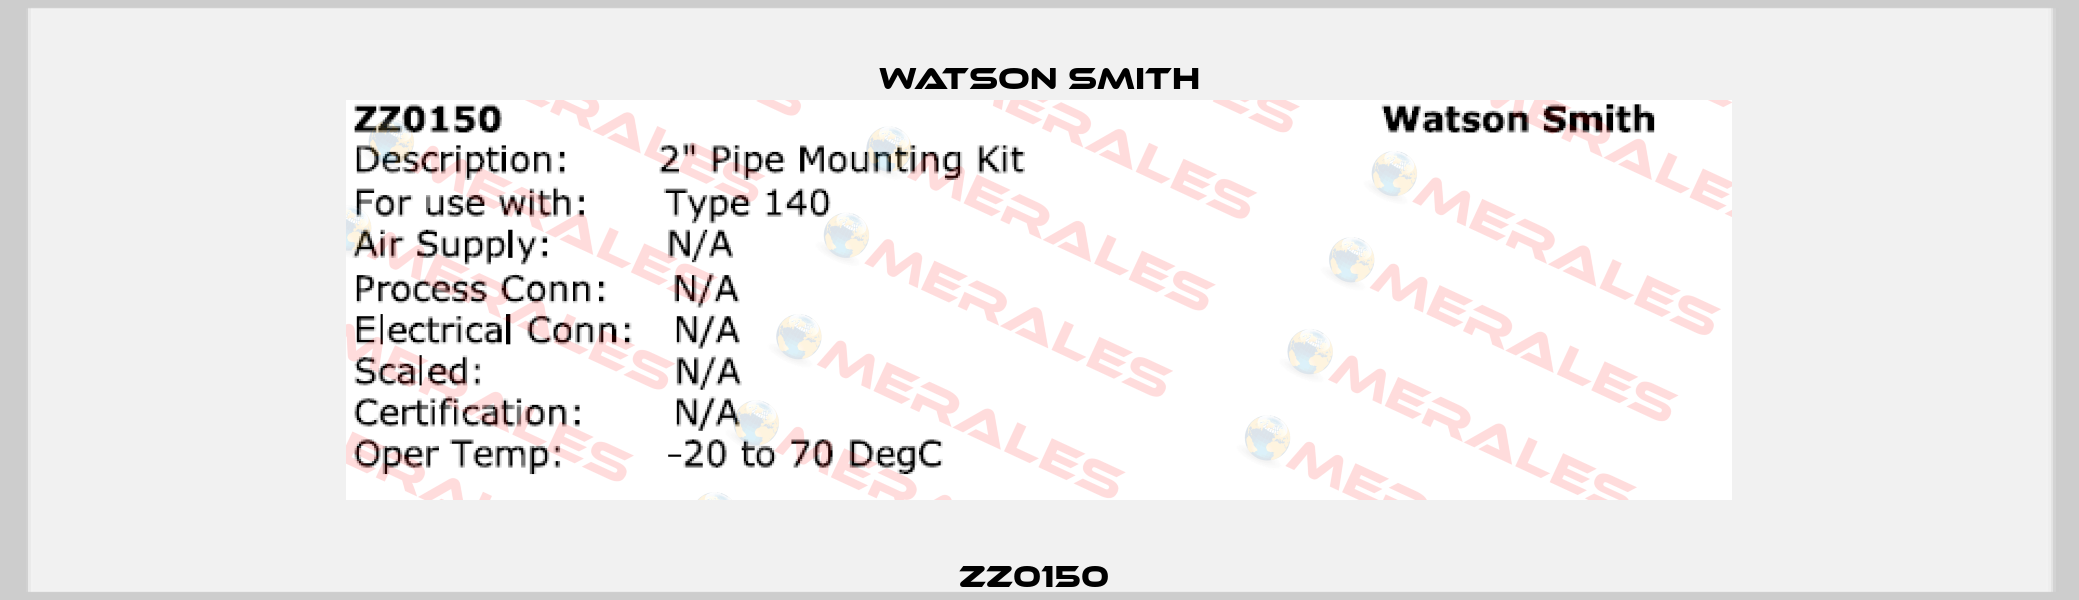 ZZ0150  Watson Smith